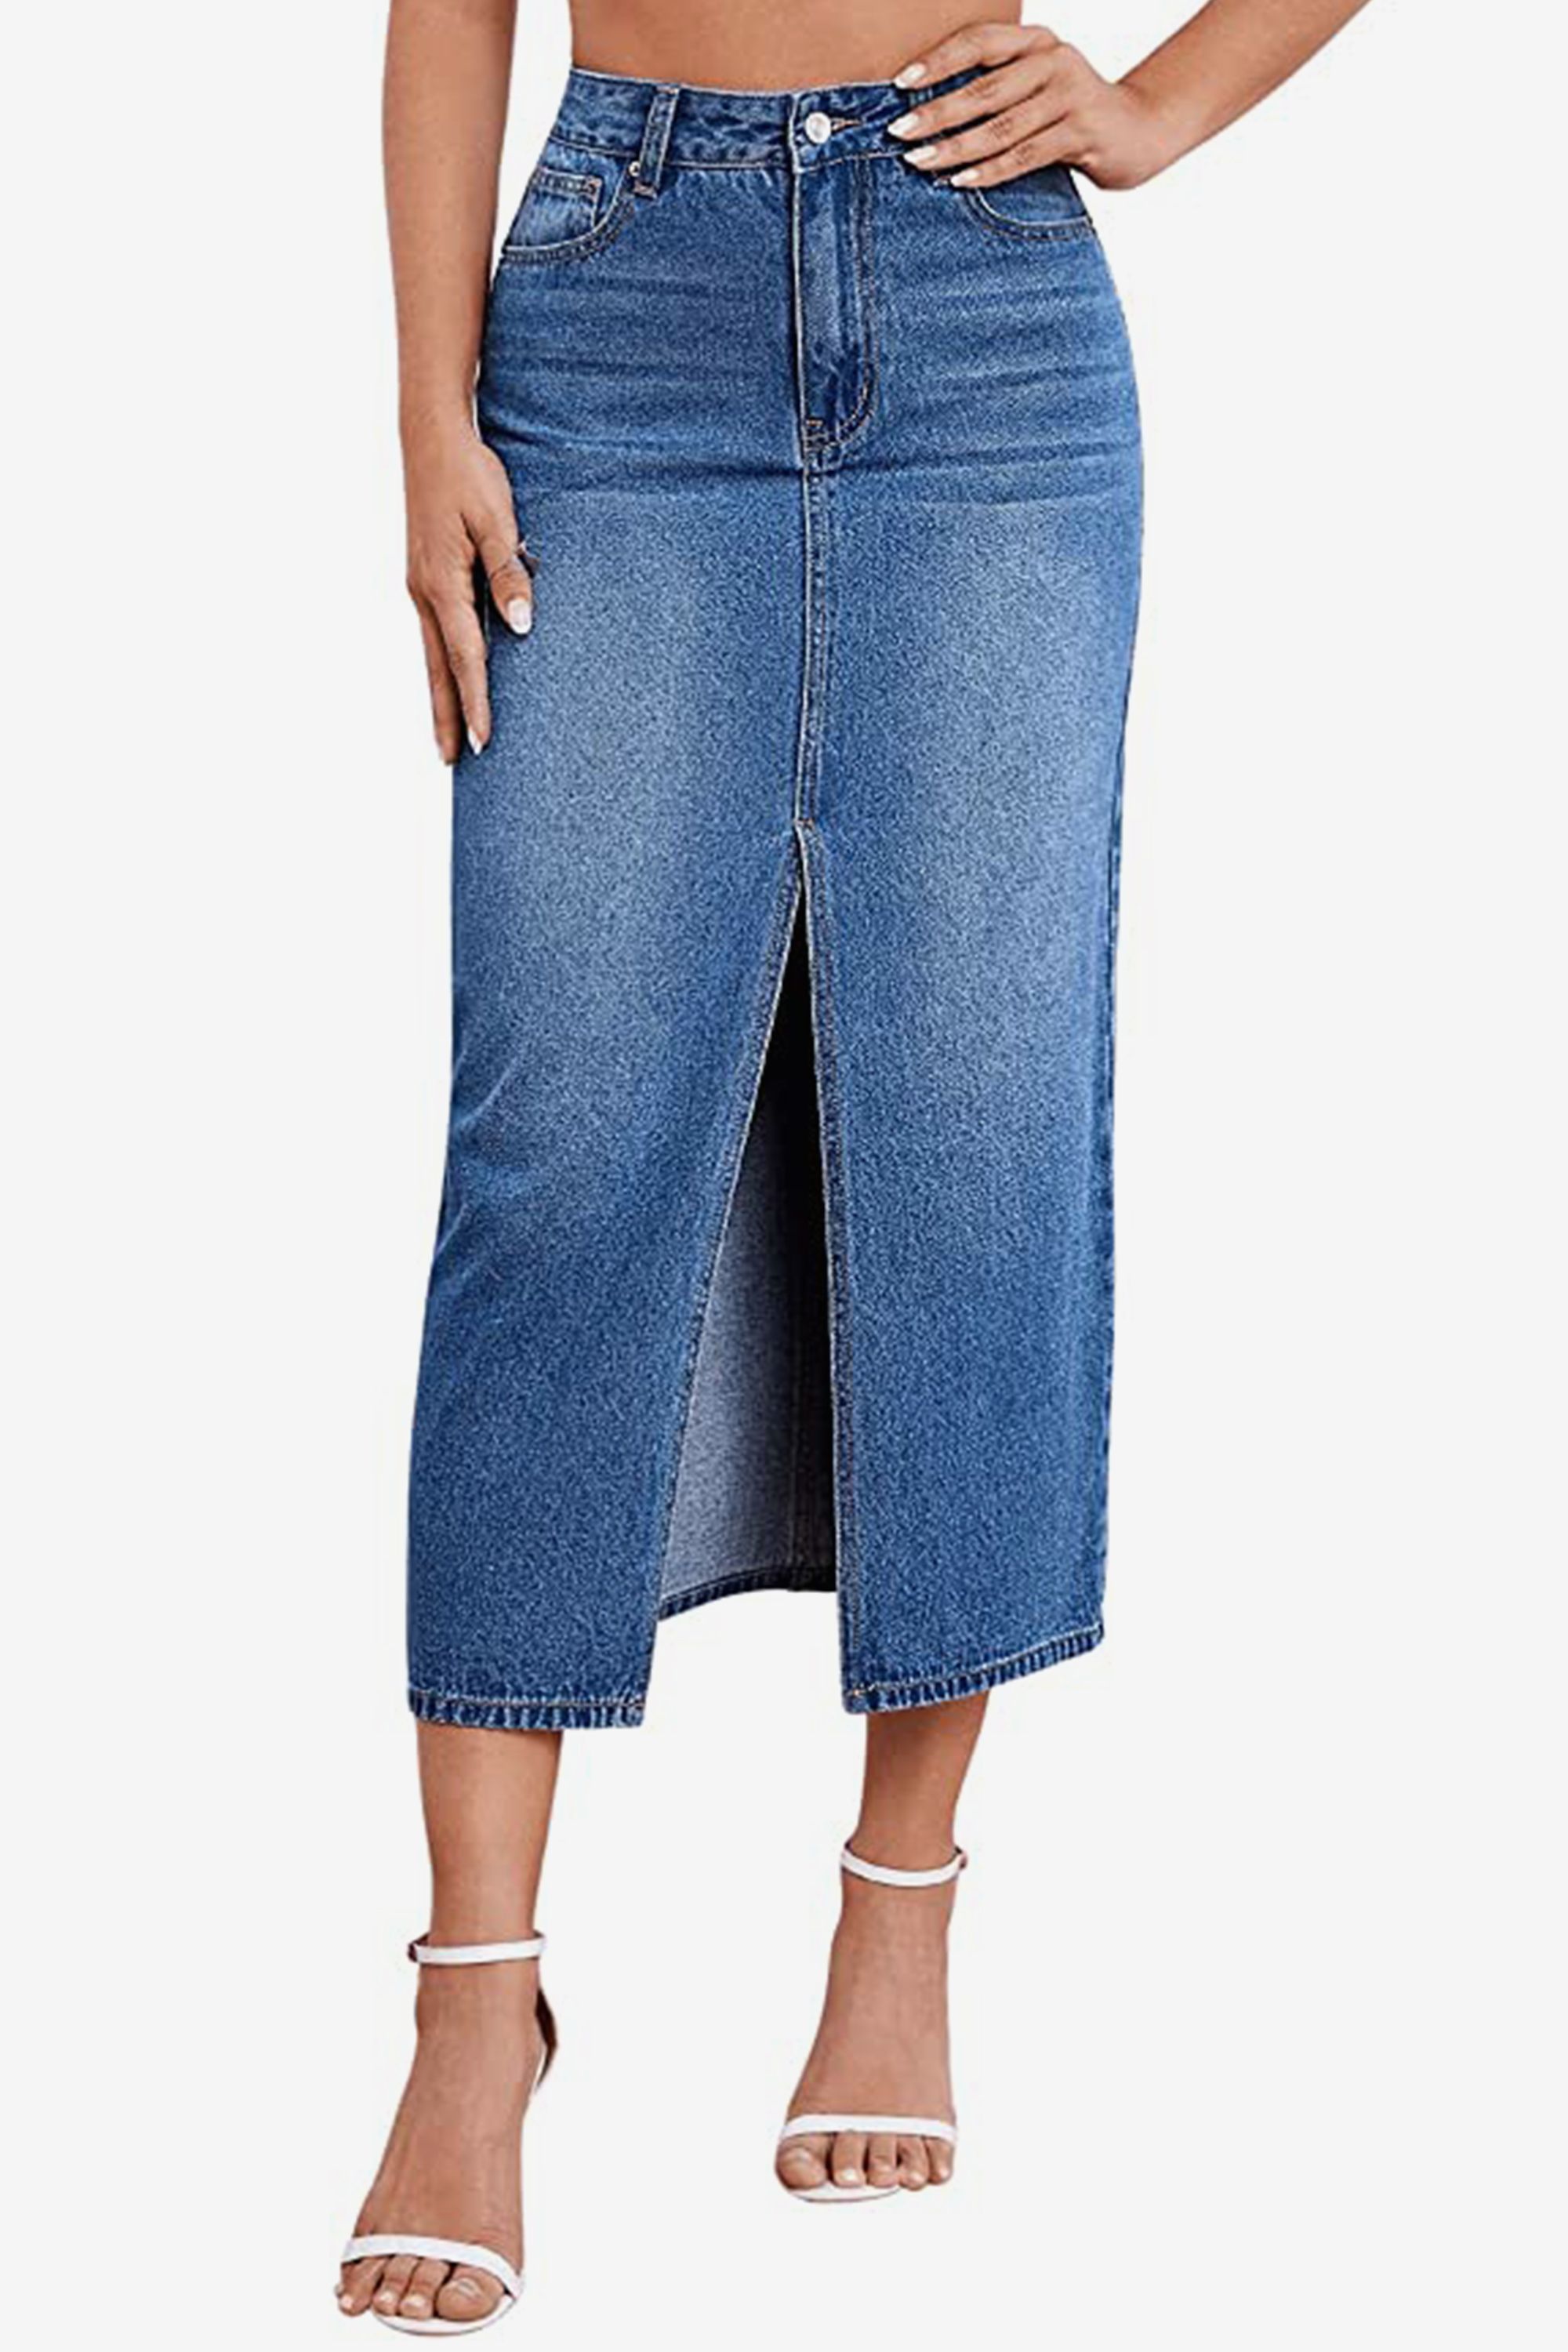 Split Front Long Jean Skirt